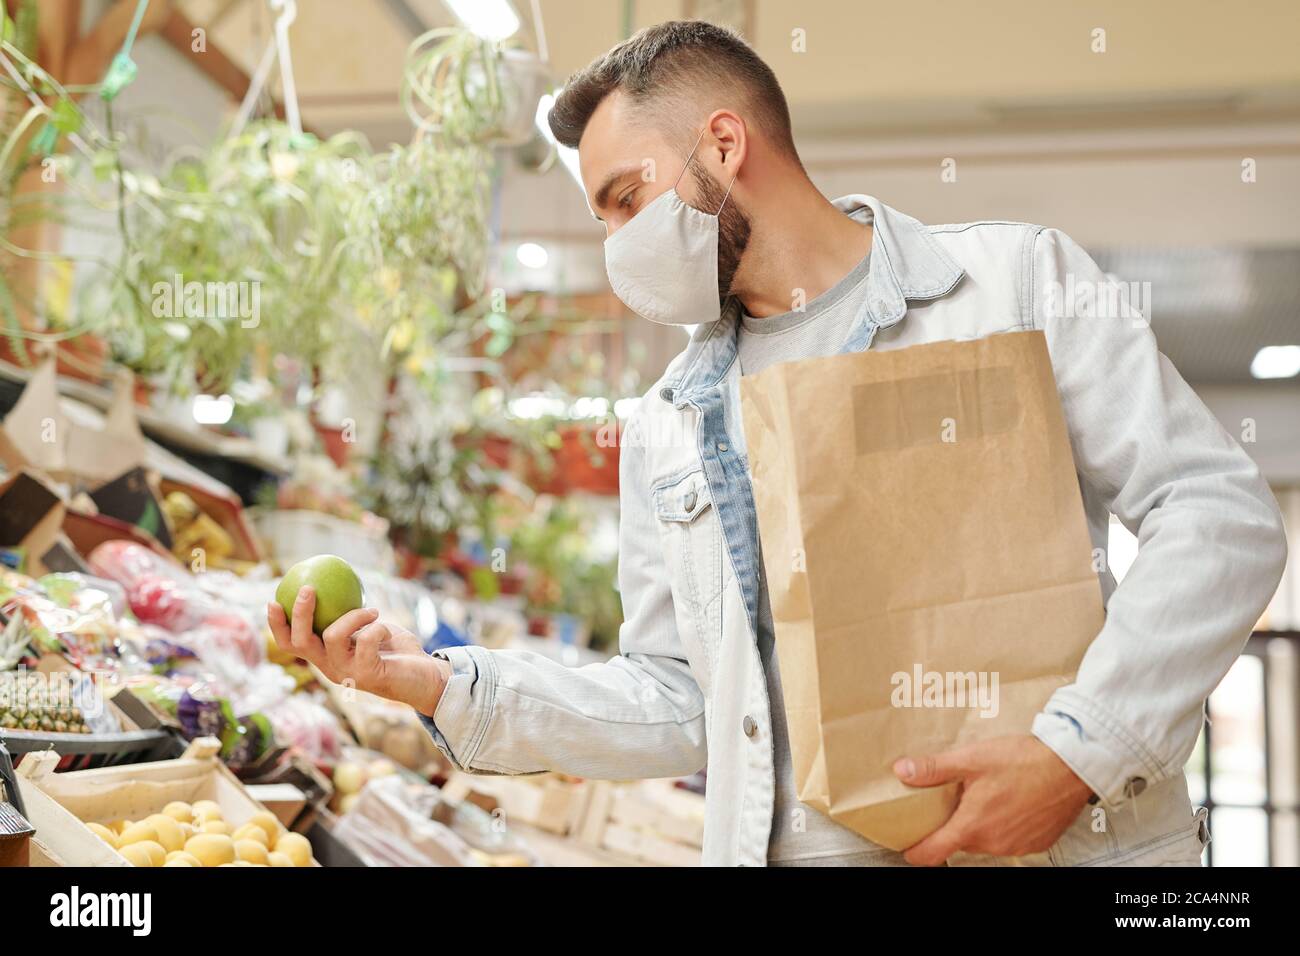 Giovane uomo in maschera facciale che tiene il sacchetto di carta e la scelta della frutta mentre comprando i generi alimentari freschi al mercato organico Foto Stock